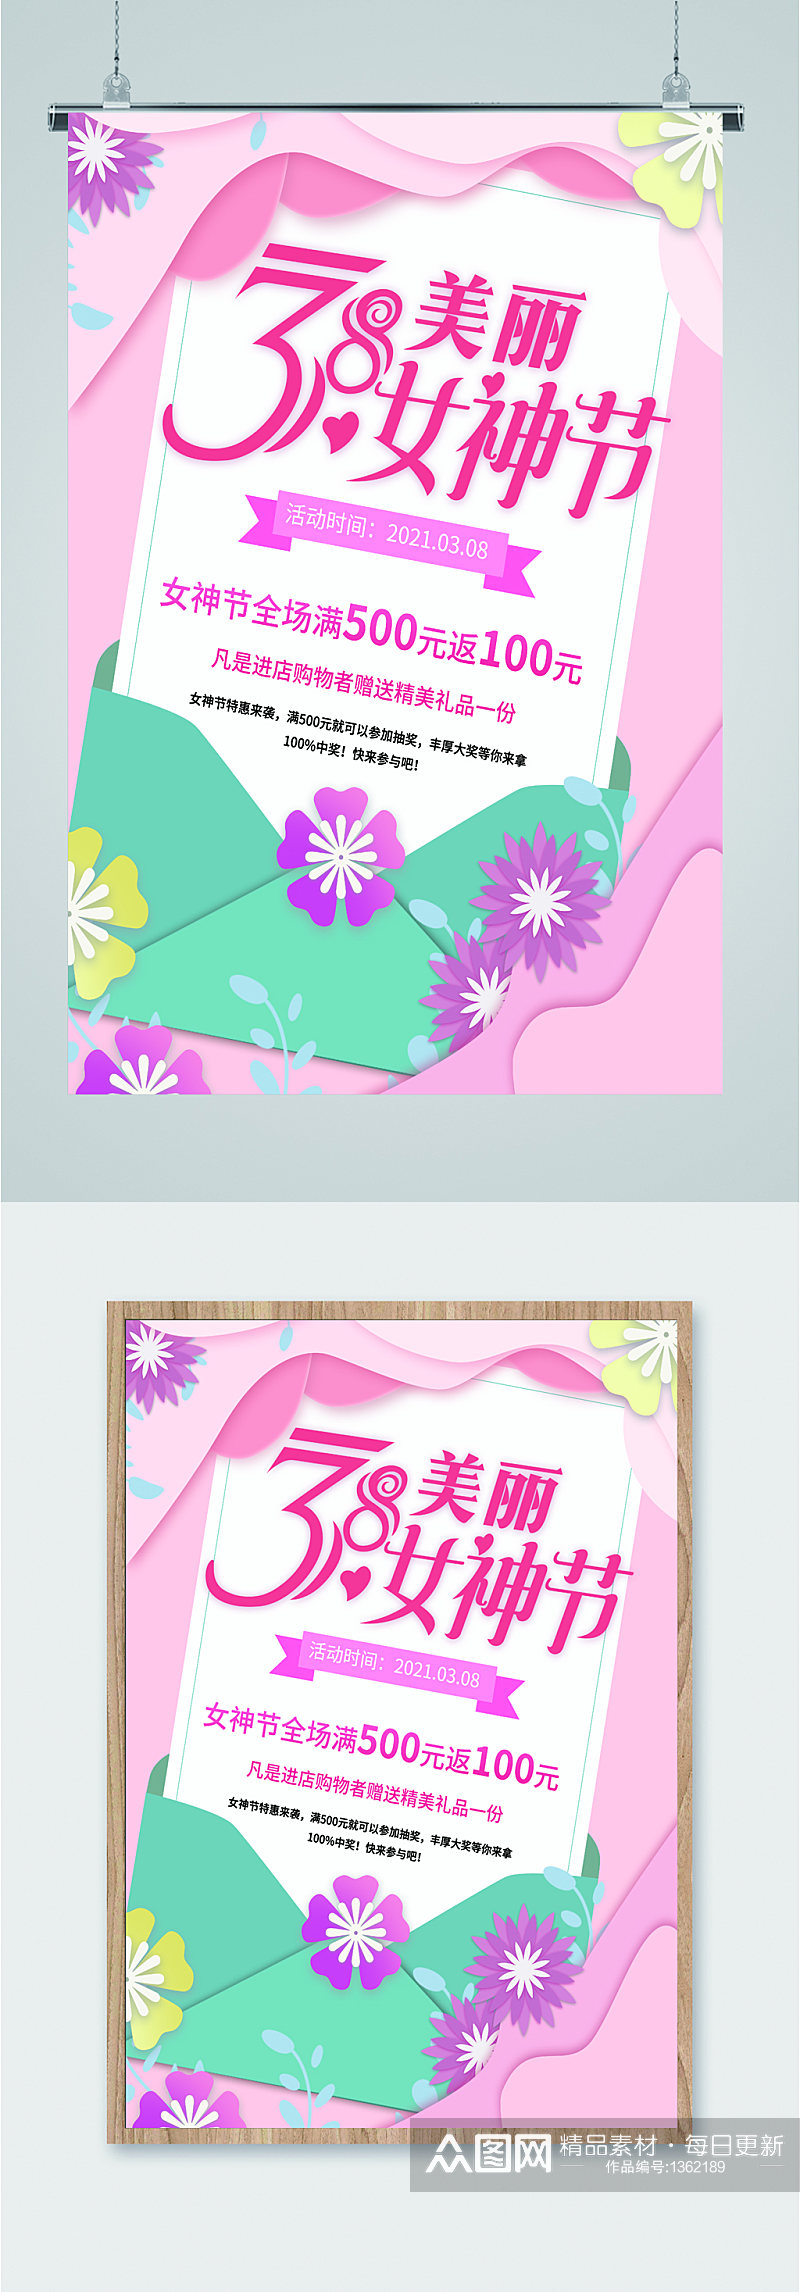 38女神节节日促销海报素材